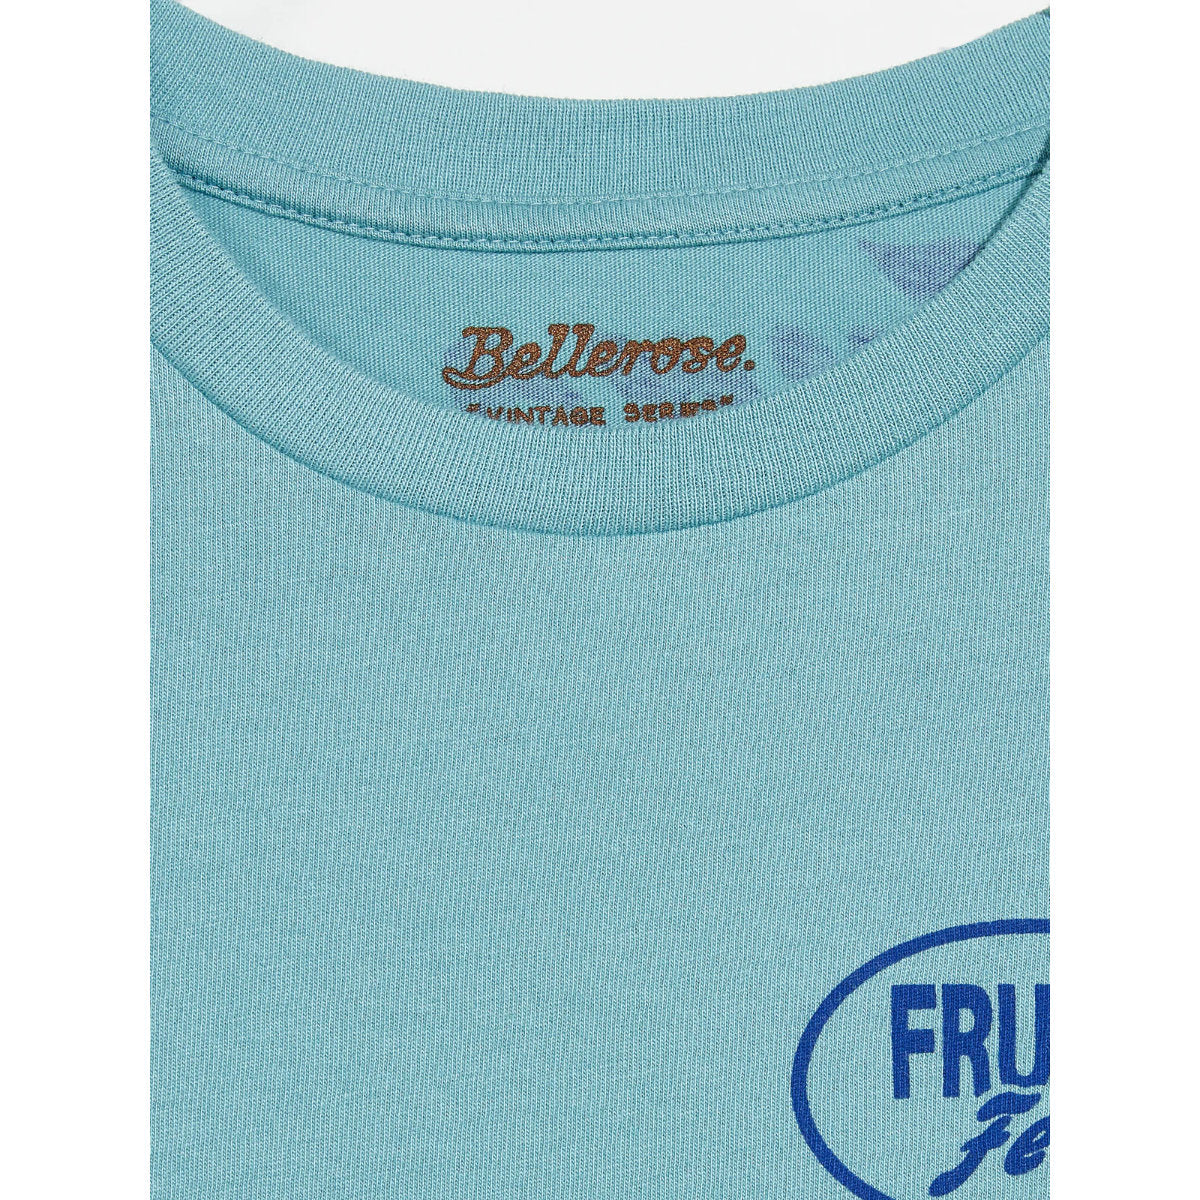 Bellerose T-shirt Argi Fruta Feliz cameo